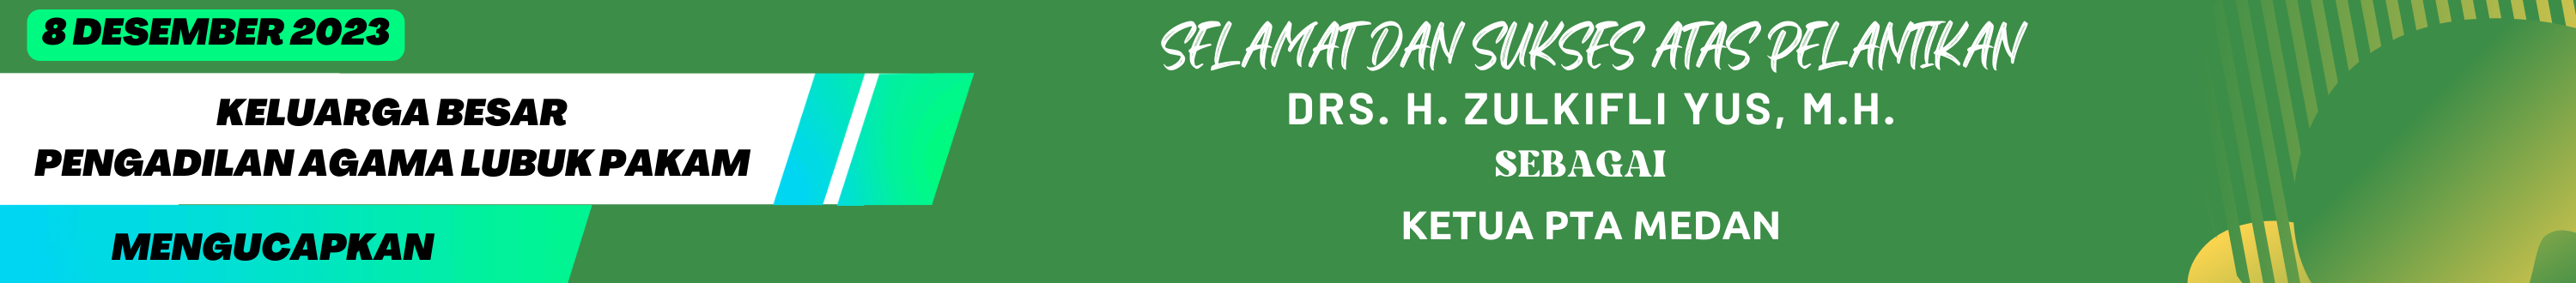 1_Ucapan_Selamat_dan_Sukses_Pak_KPTA_Medan.png